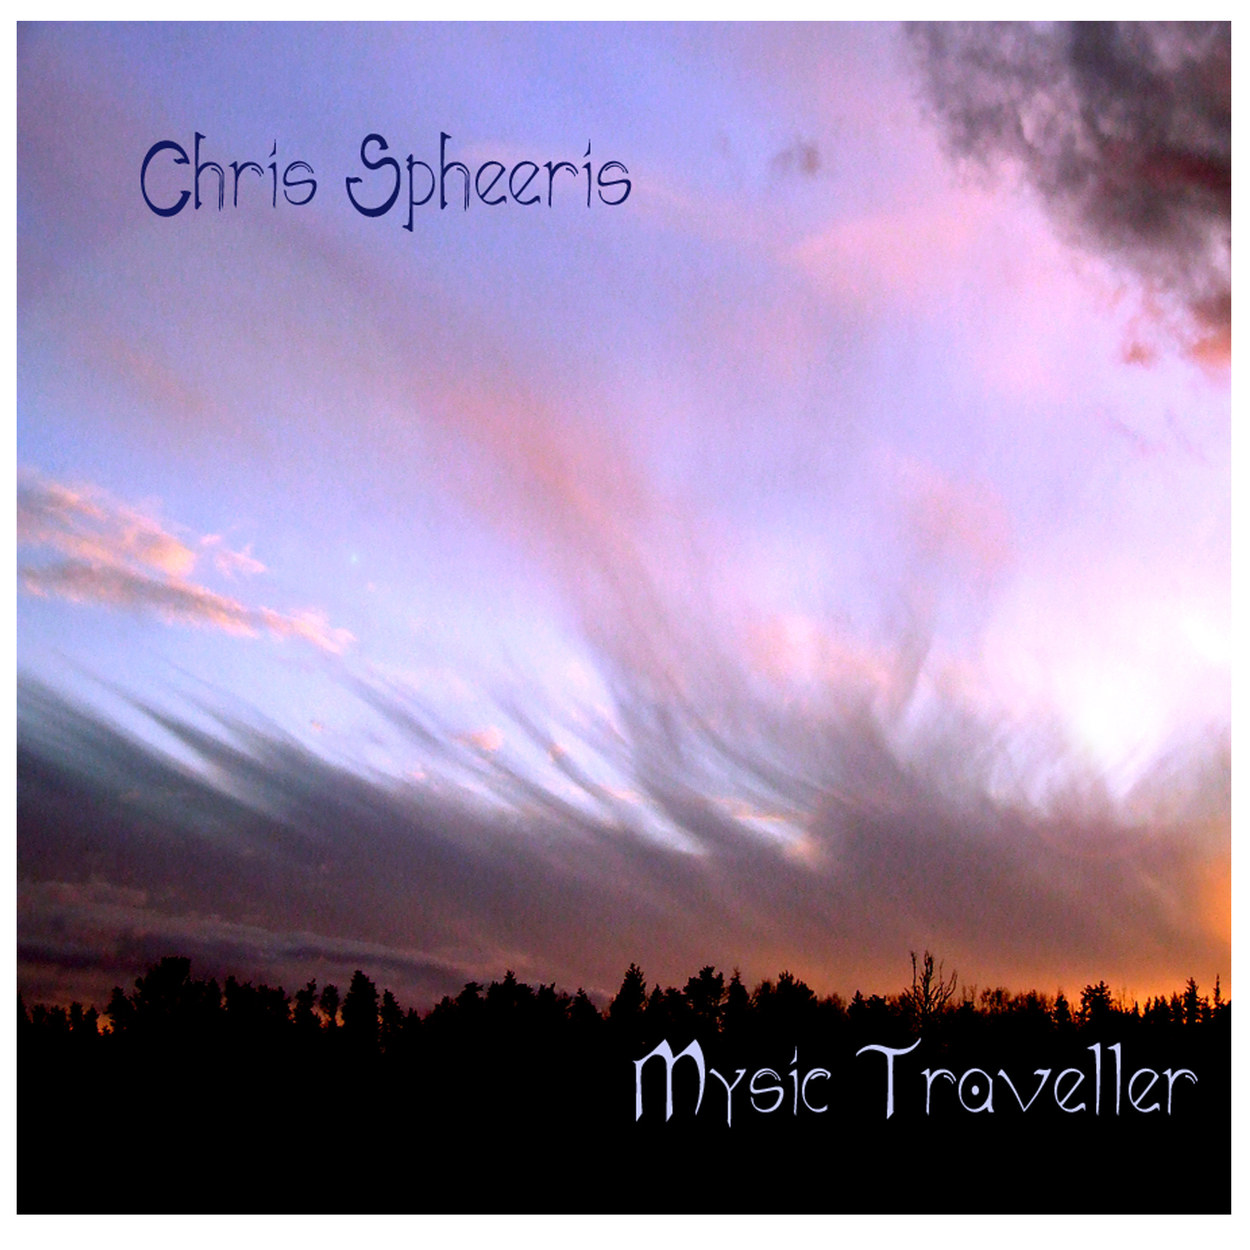 Mystic Traveller by Chris Spheeris